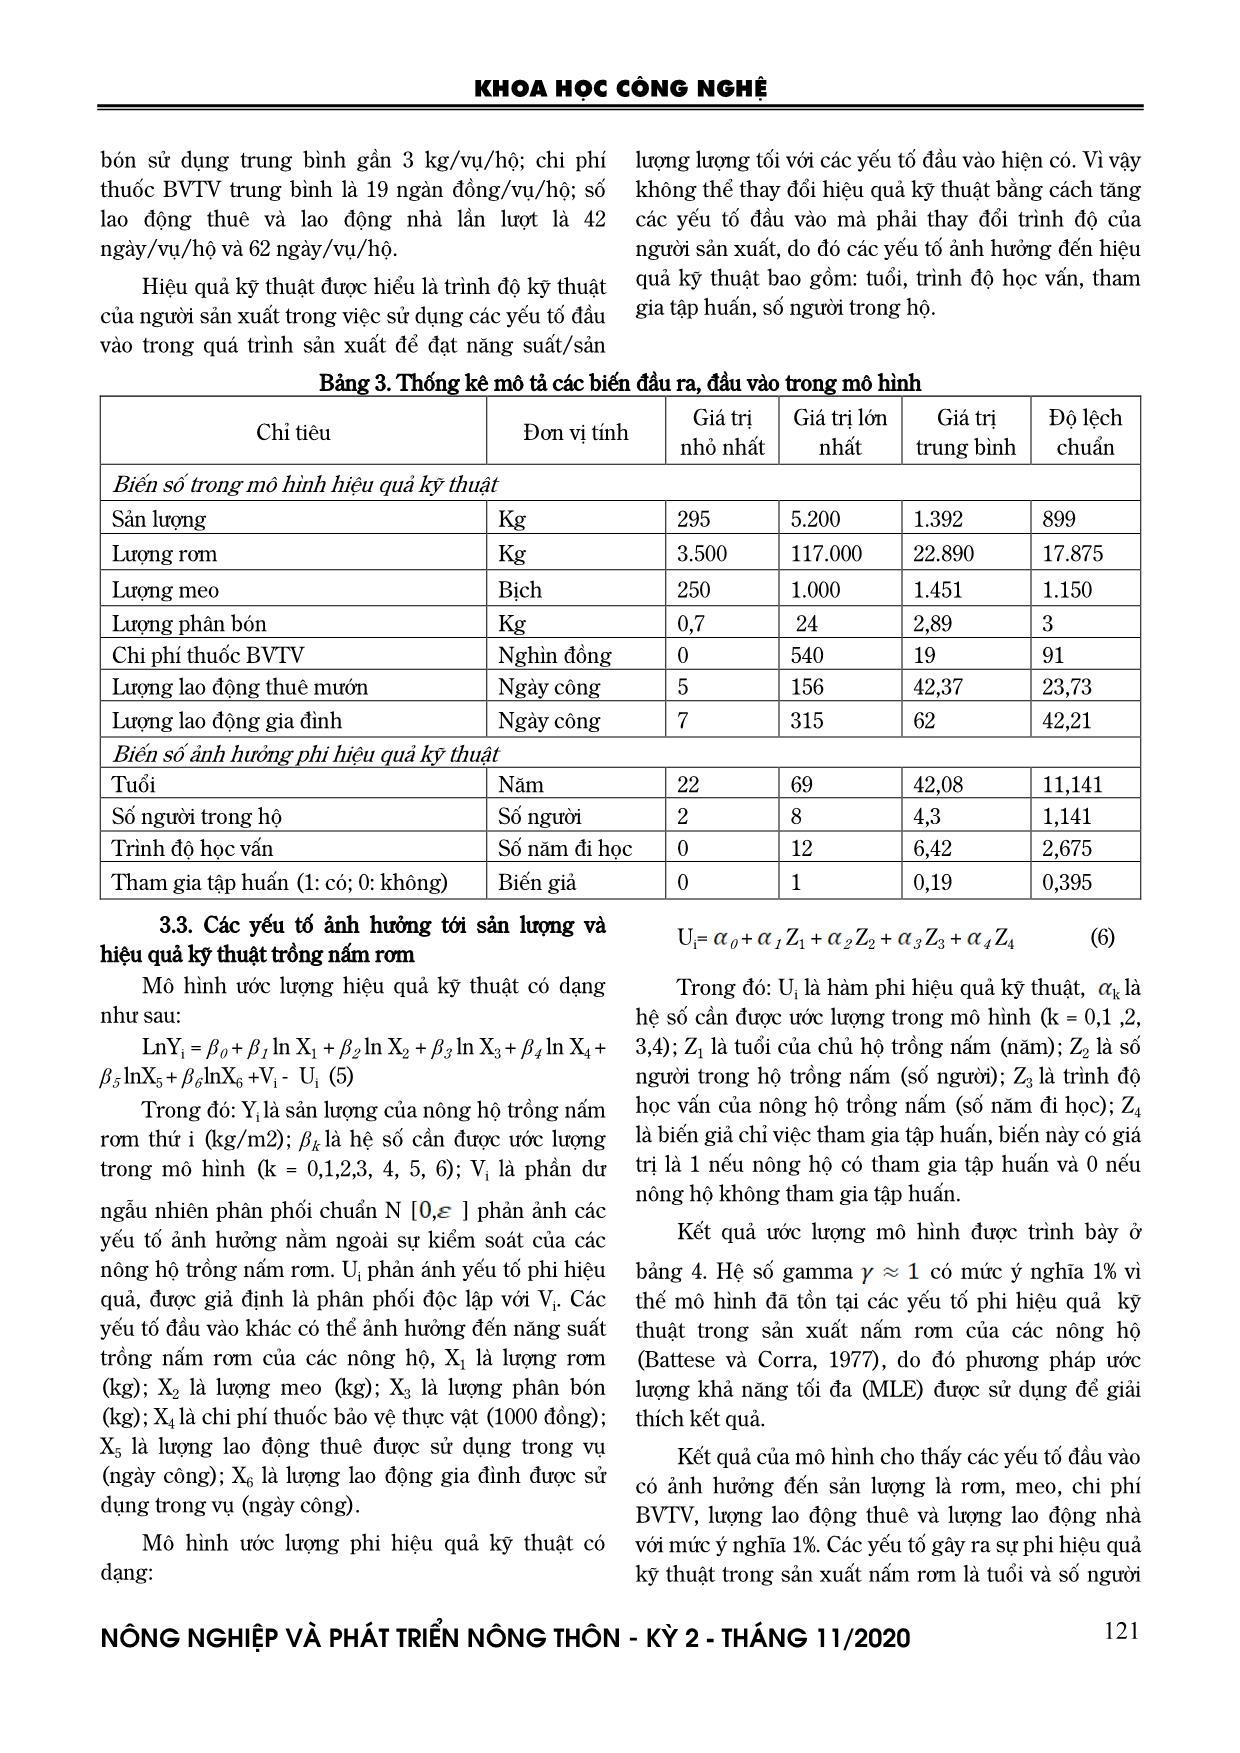 Phân tích hiệu quả kỹ thuật của các nông hộ trồng nấm rơm ở đồng bằng sông Cửu Long trang 4